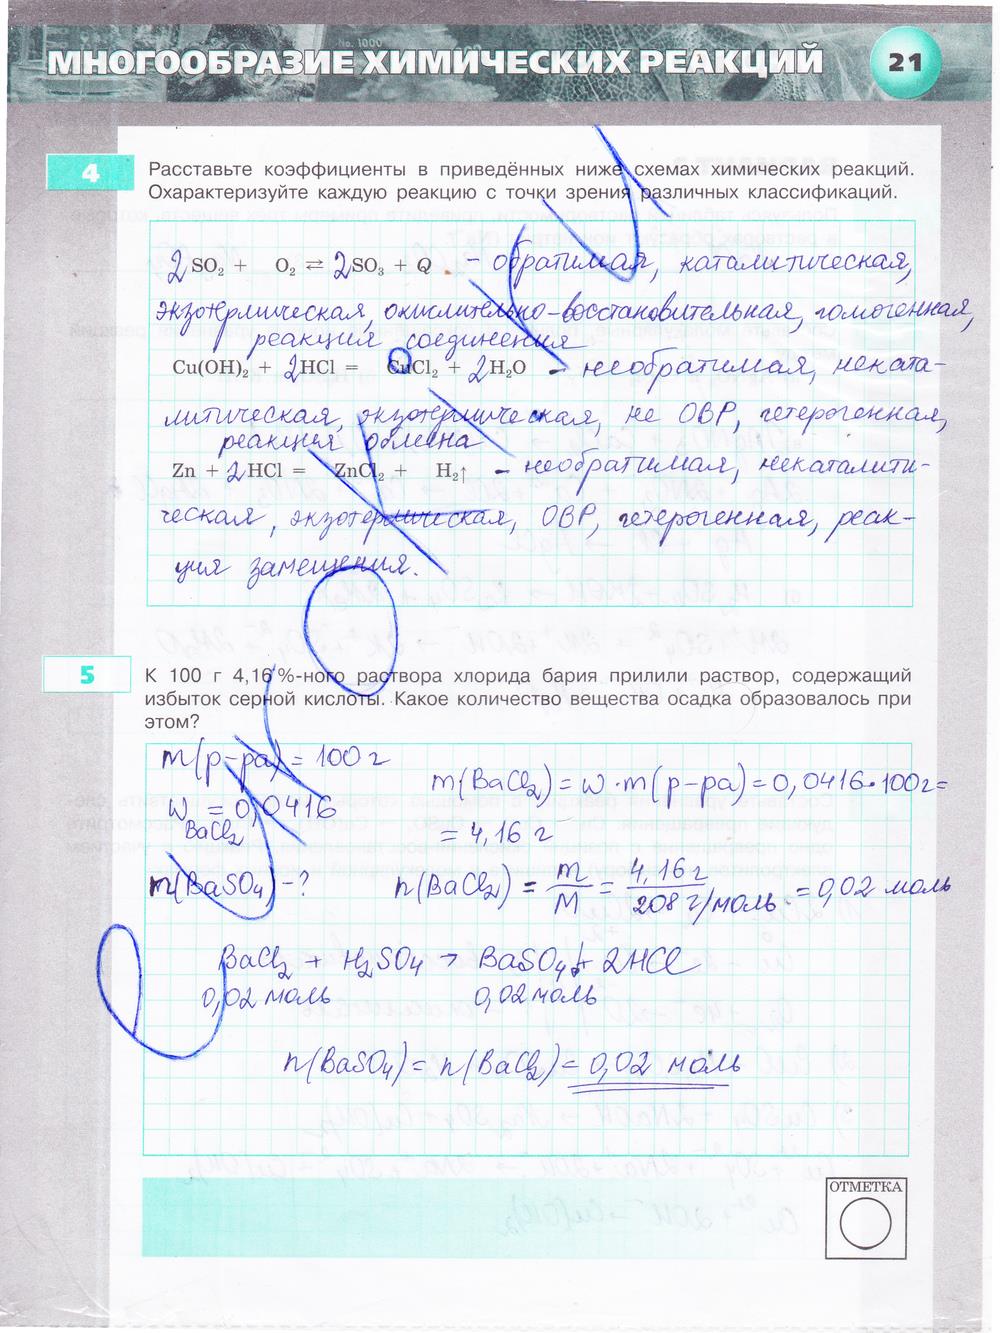 гдз 9 класс тетрадь-экзаменатор страница 21 химия Бобылева, Бирюлина